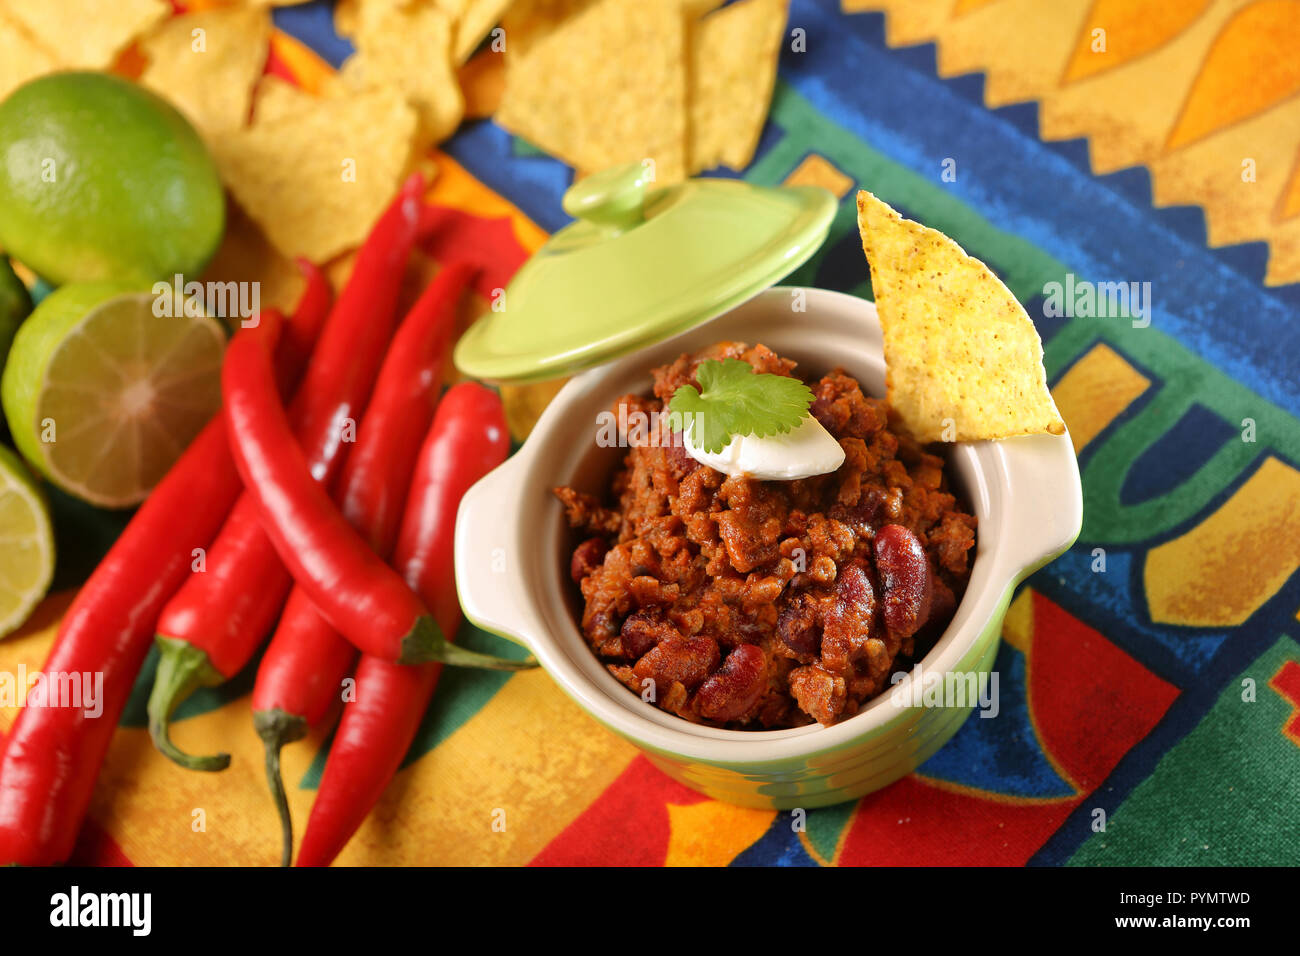 Chili con carne mit Nachos auf Tischdecke in Spanisch Muster  Stockfotografie - Alamy